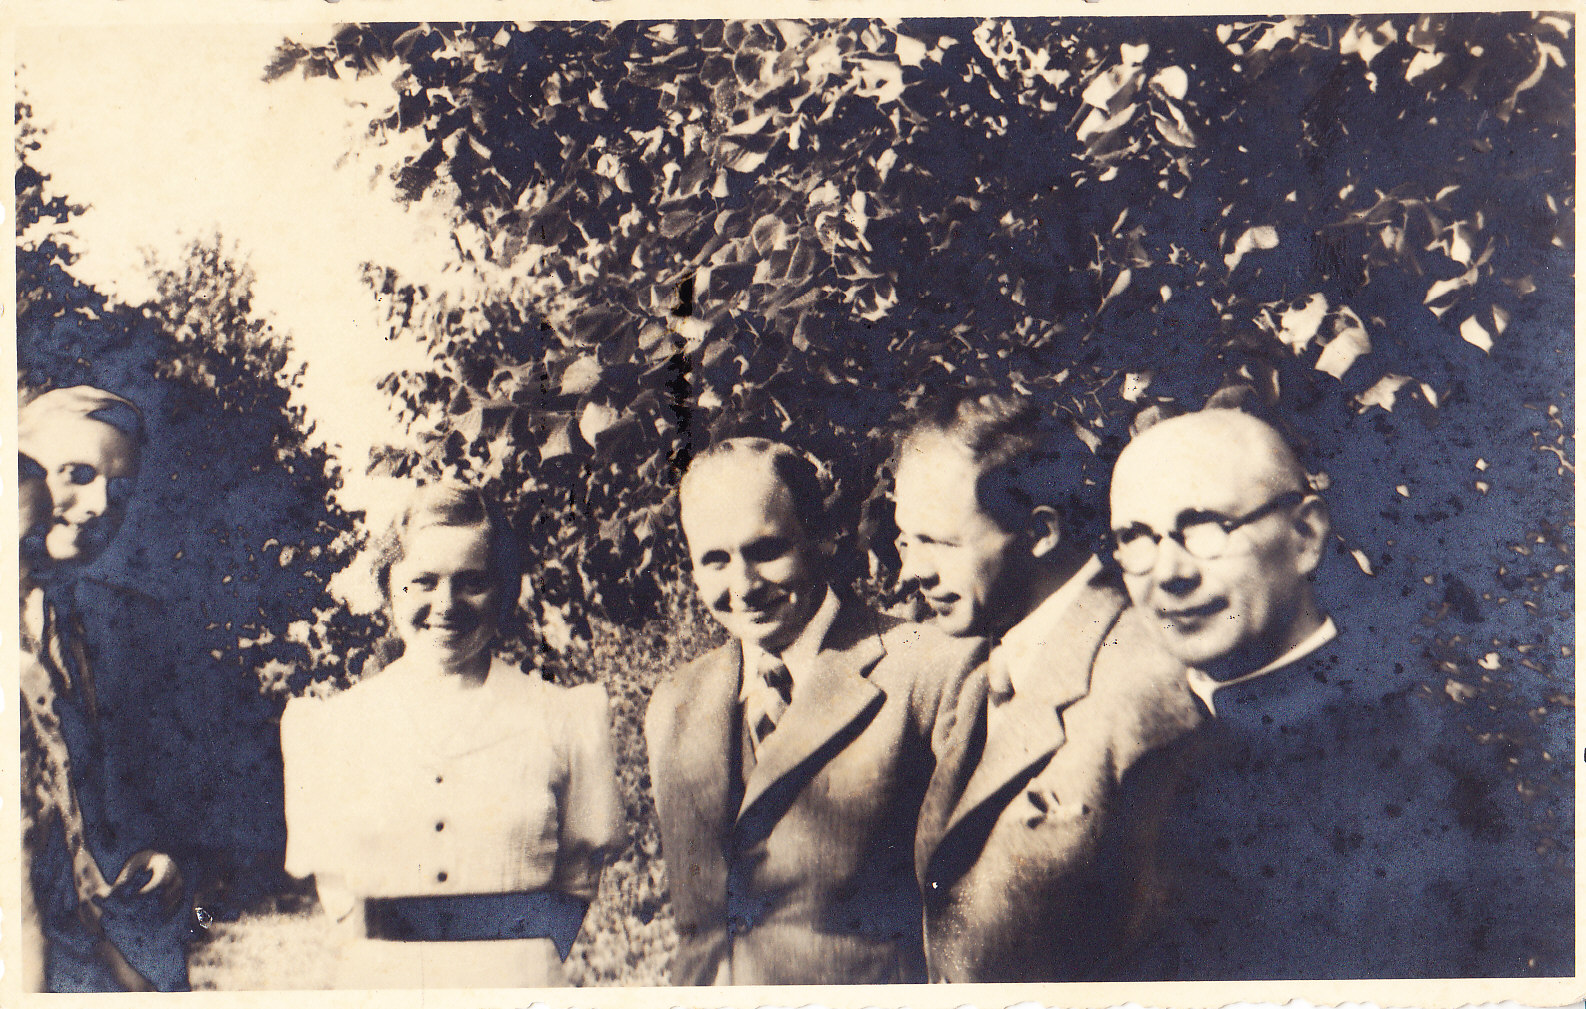 Iš kairės M. ir J. Valaičiai, E. Račiūnaitė, J. Grinius, J. Ambrazevičius, kun. K. Žitkus. Račiūnų dvare Vytėnuose. Apie 1936m. MLLM 87689